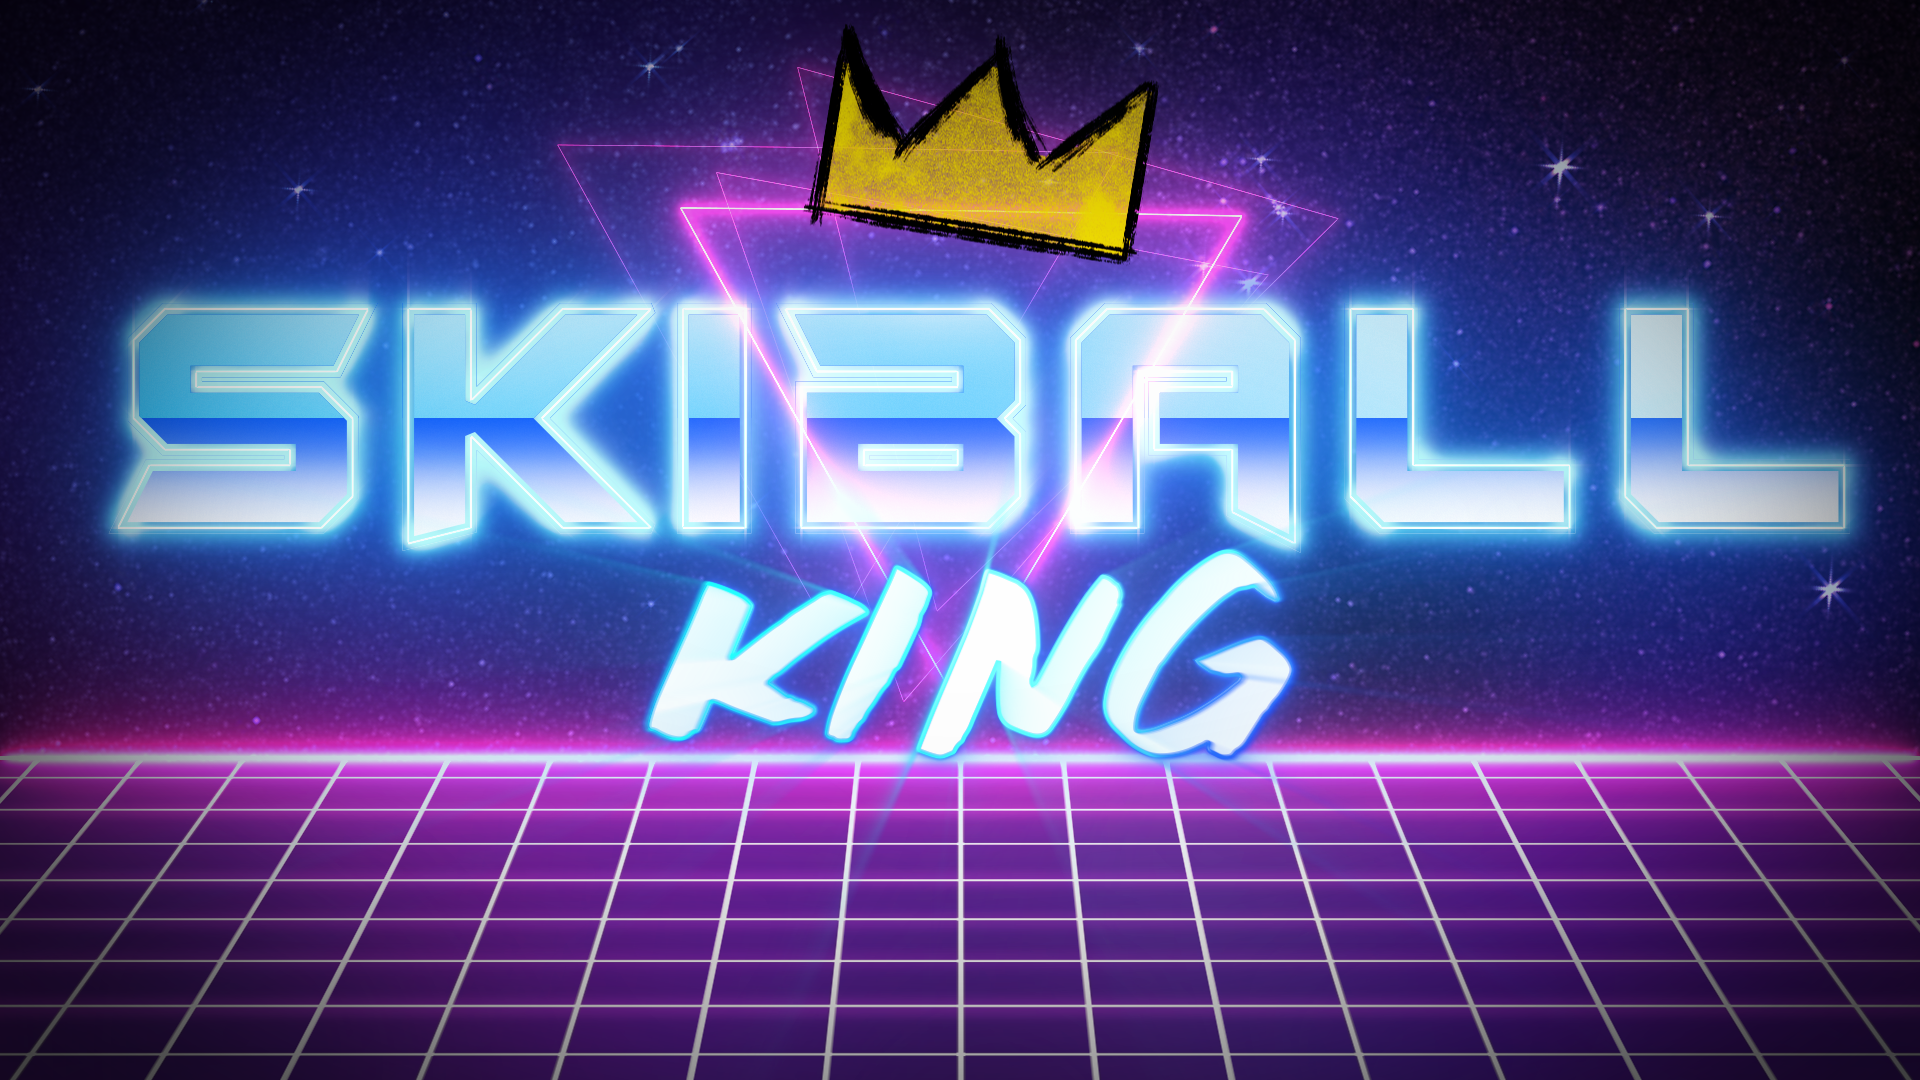 SkiBall King